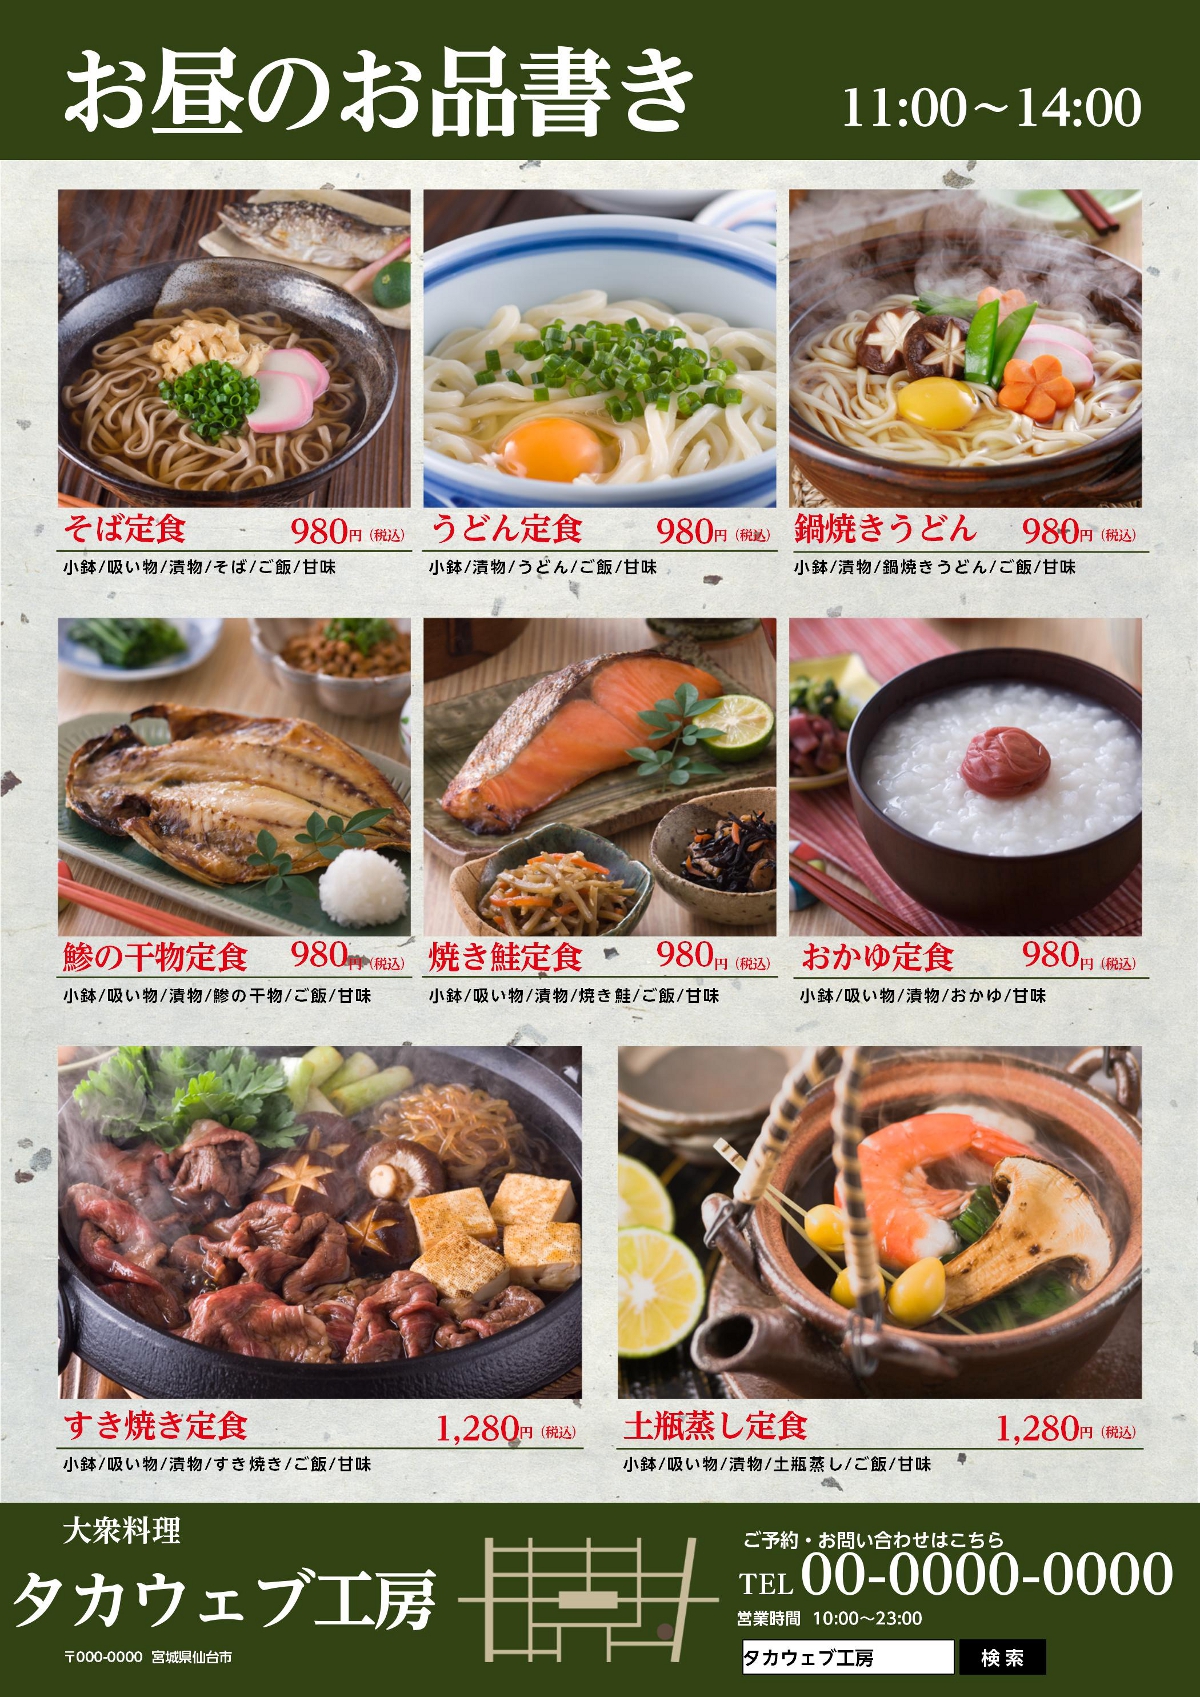 仙台市の食堂の料理メニューのチラシデザイン